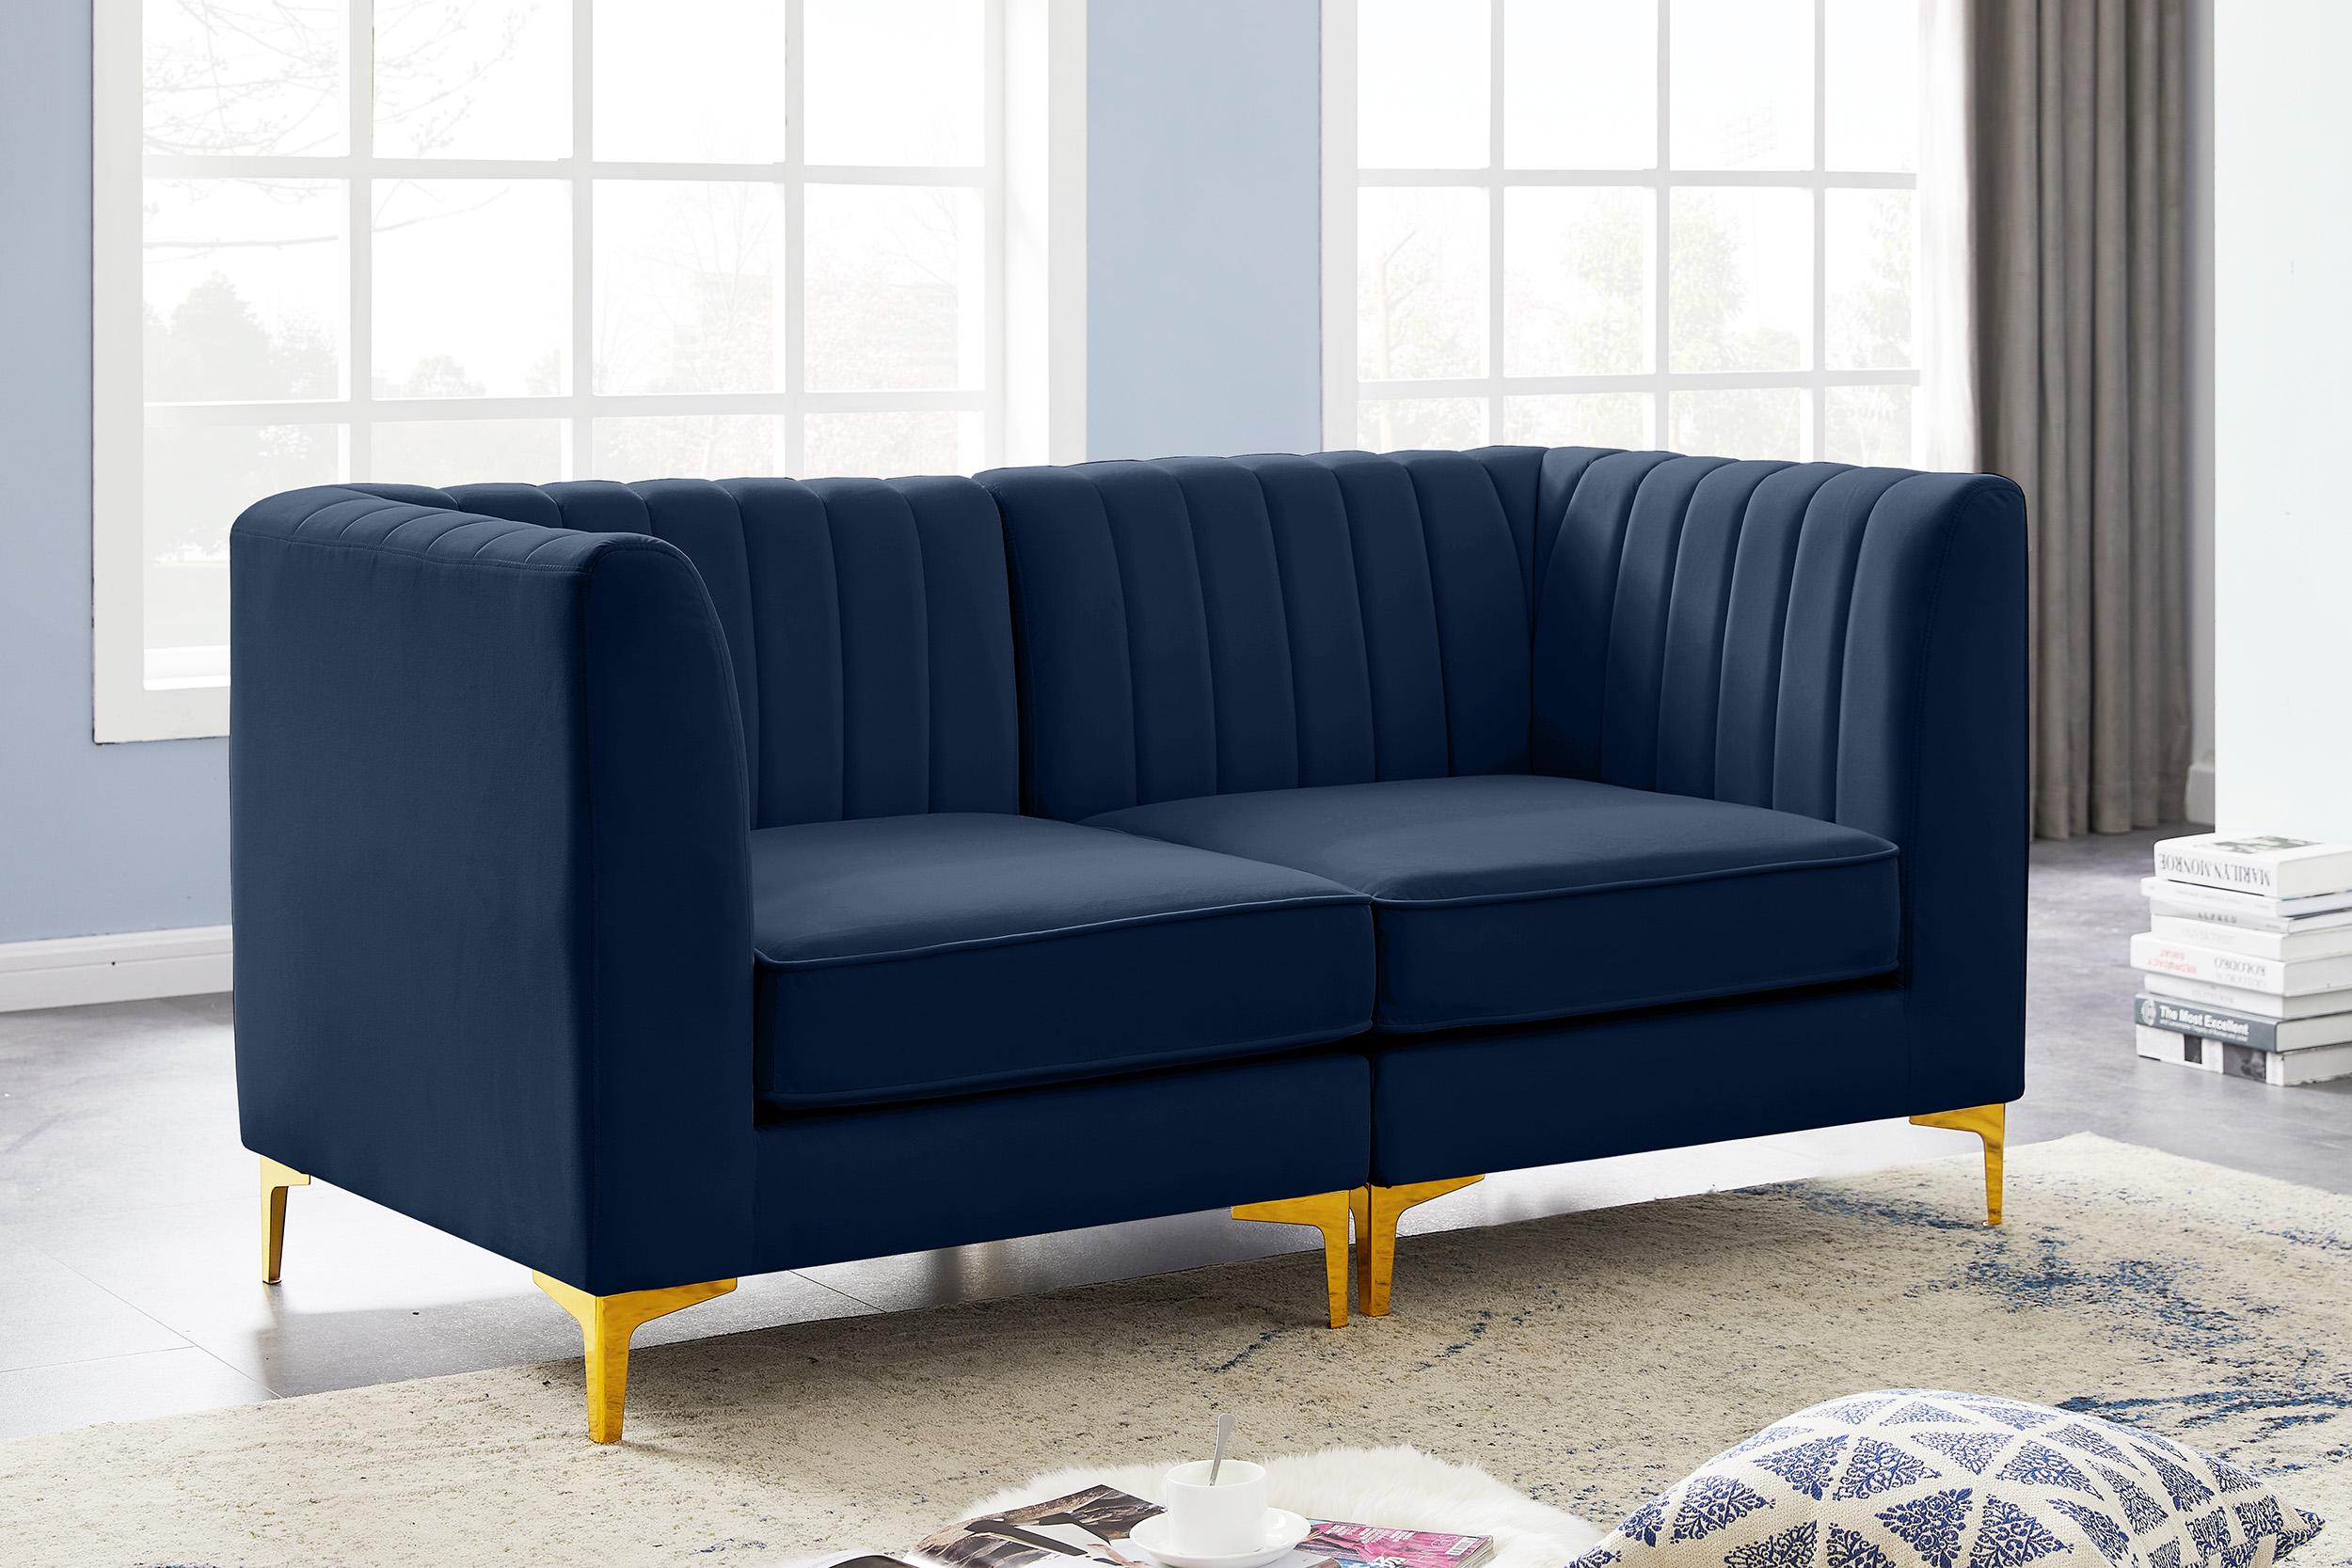 

    
604Navy-S67 Meridian Furniture Modular Sectional Sofa
